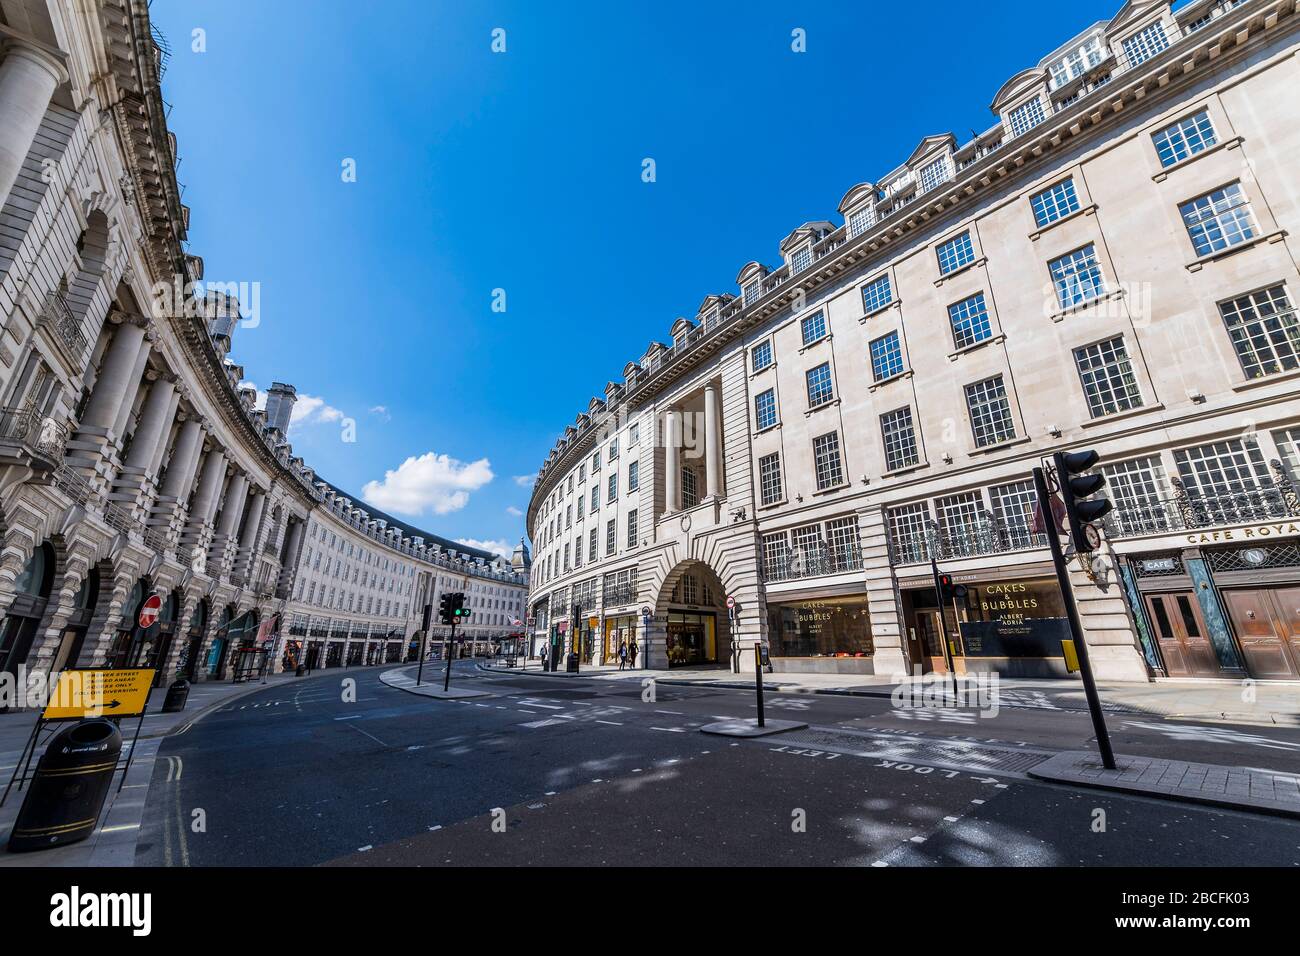 Londres, Reino Unido. 4 de abril de 2020. Regent Street es muy tranquilo, pero no está vacío - UN día soleado y la gente está en un número razonable, en todo Londres, para hacer su ejercicio diario. El "bloqueo" continúa para el brote de Coronavirus (Covid 19) en Londres. Crédito: Guy Bell/Alamy Live News Foto de stock